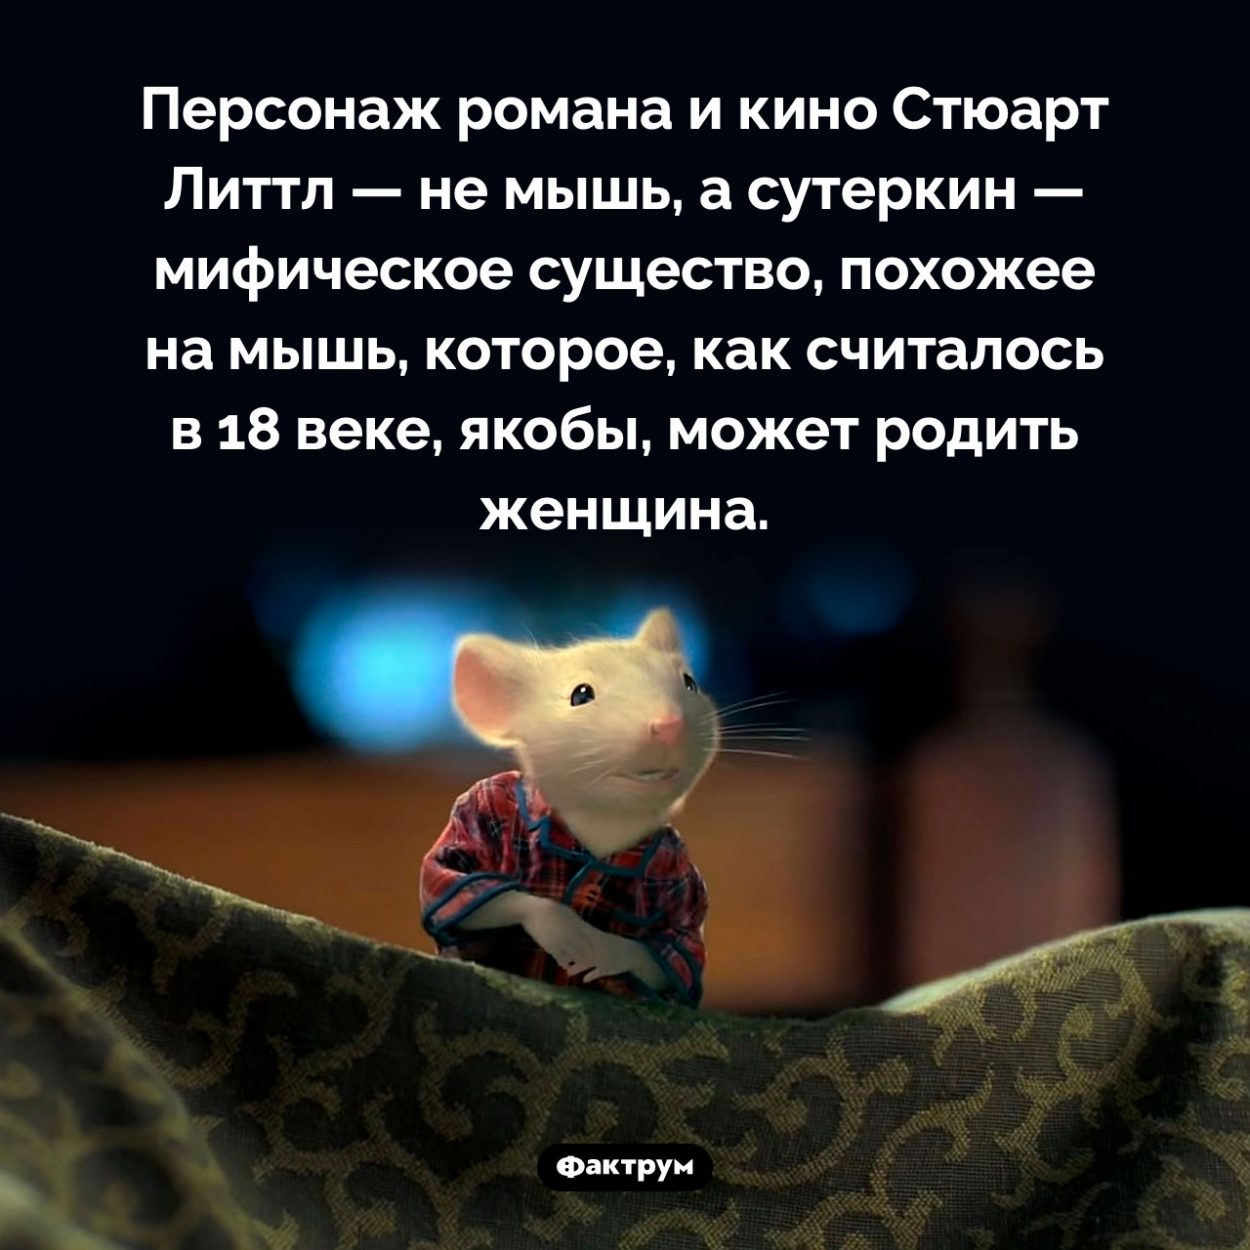 Стюарт Литтл — не мышь. Персонаж романа и кино Стюарт Литтл — не мышь, а сутеркин — мифическое существо, похожее на мышь, которое, как считалось в 18 веке, якобы, может родить женщина.